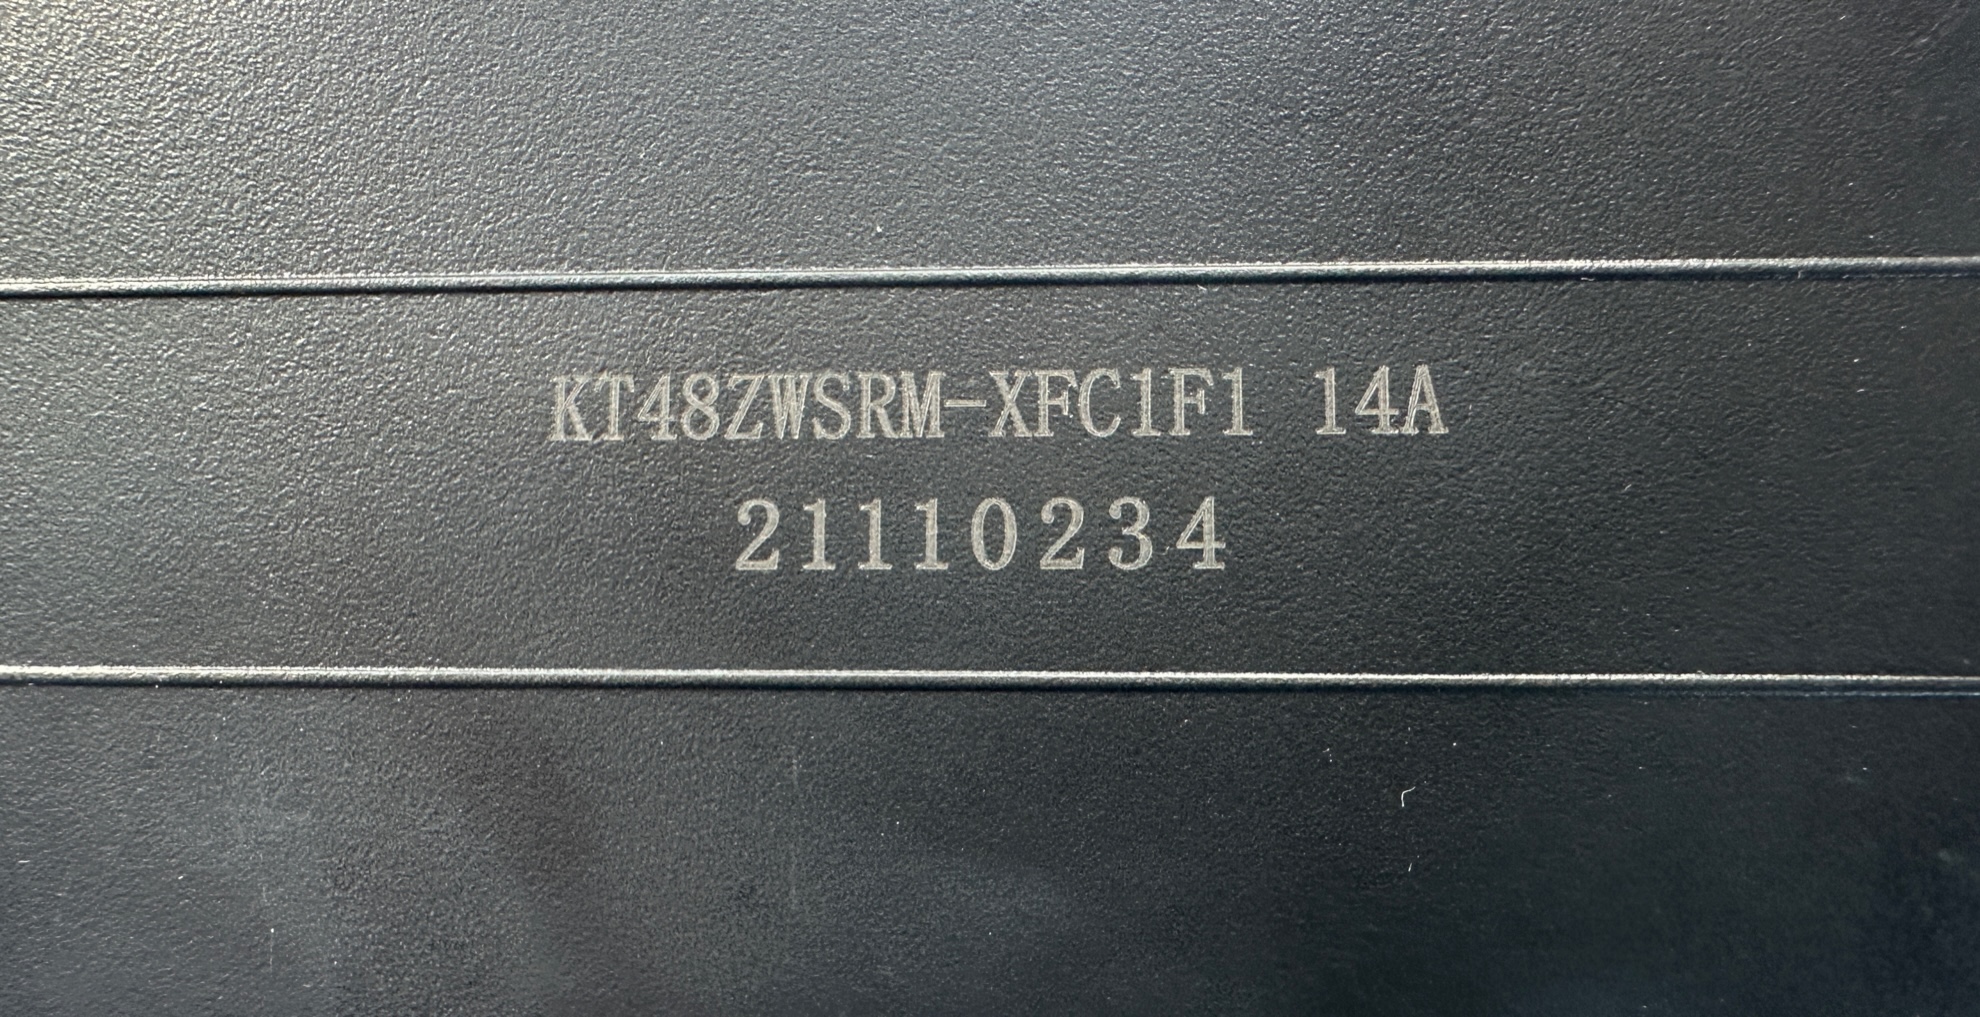 Controllore UD integrato nella guida della batteria 48V 14A